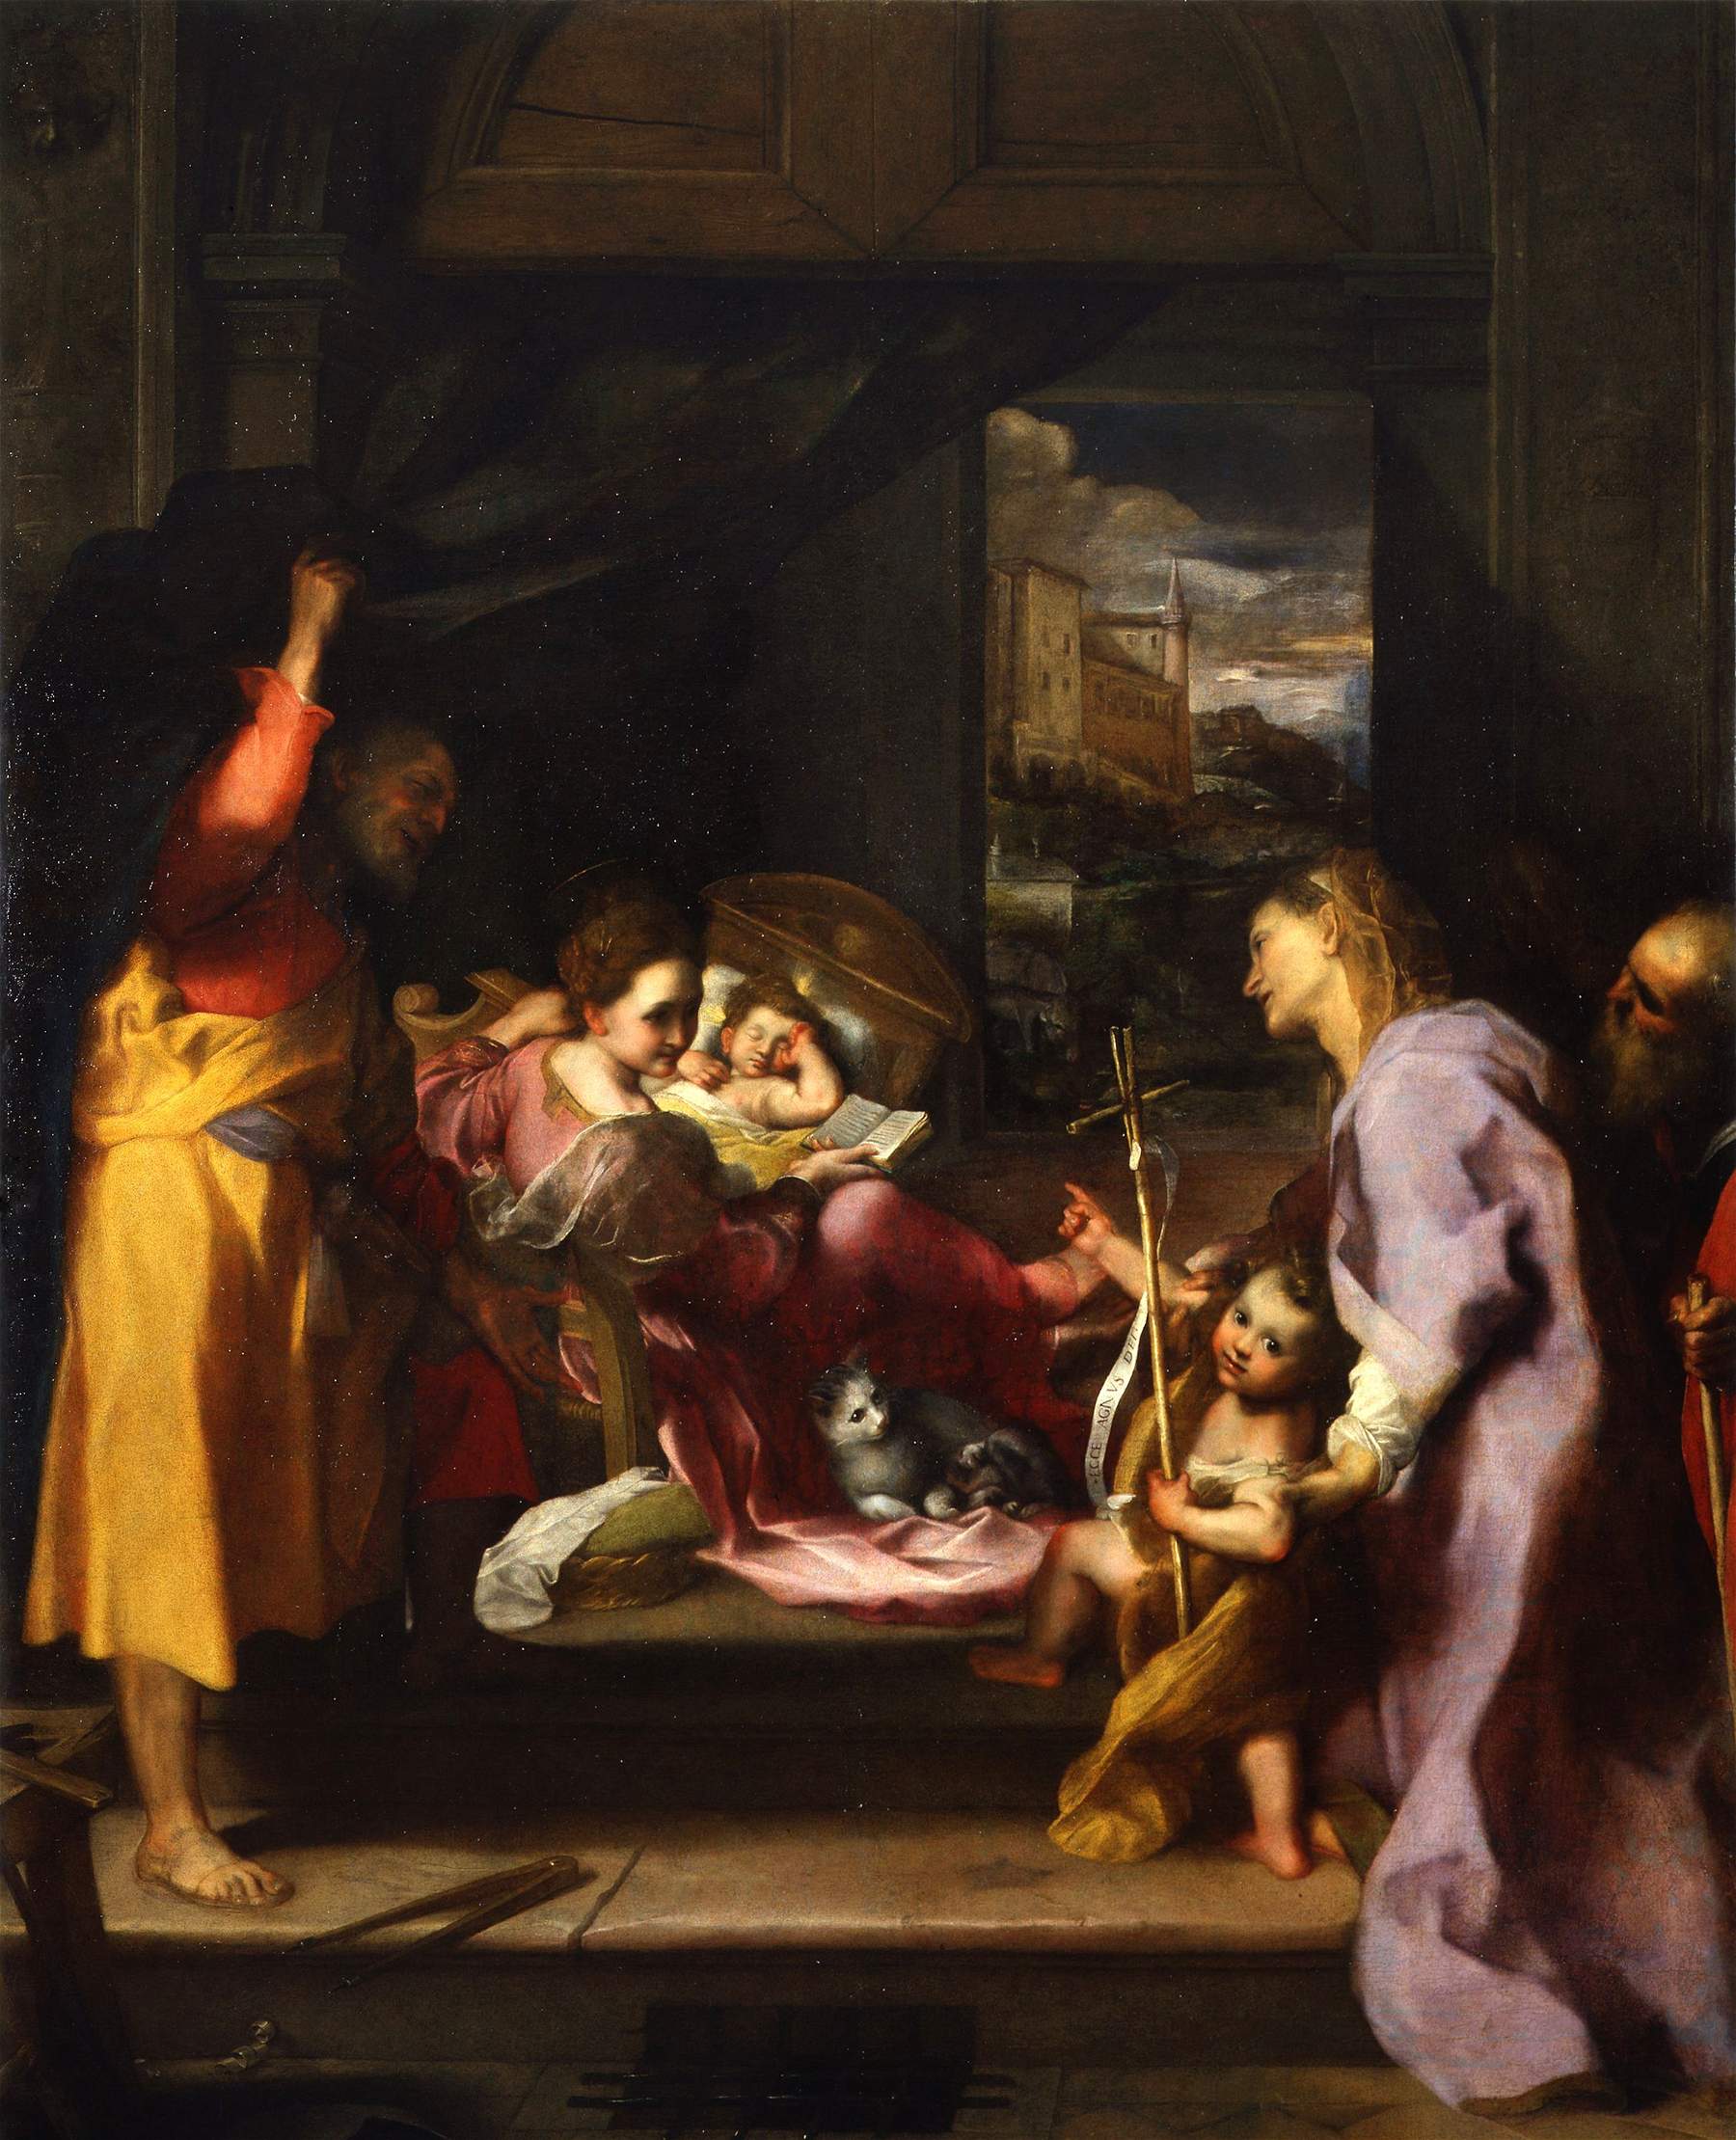 La Madonna della Gatta, capolavoro di Federico Barocci, esce dai depositi degli Uffizi e torna visibile